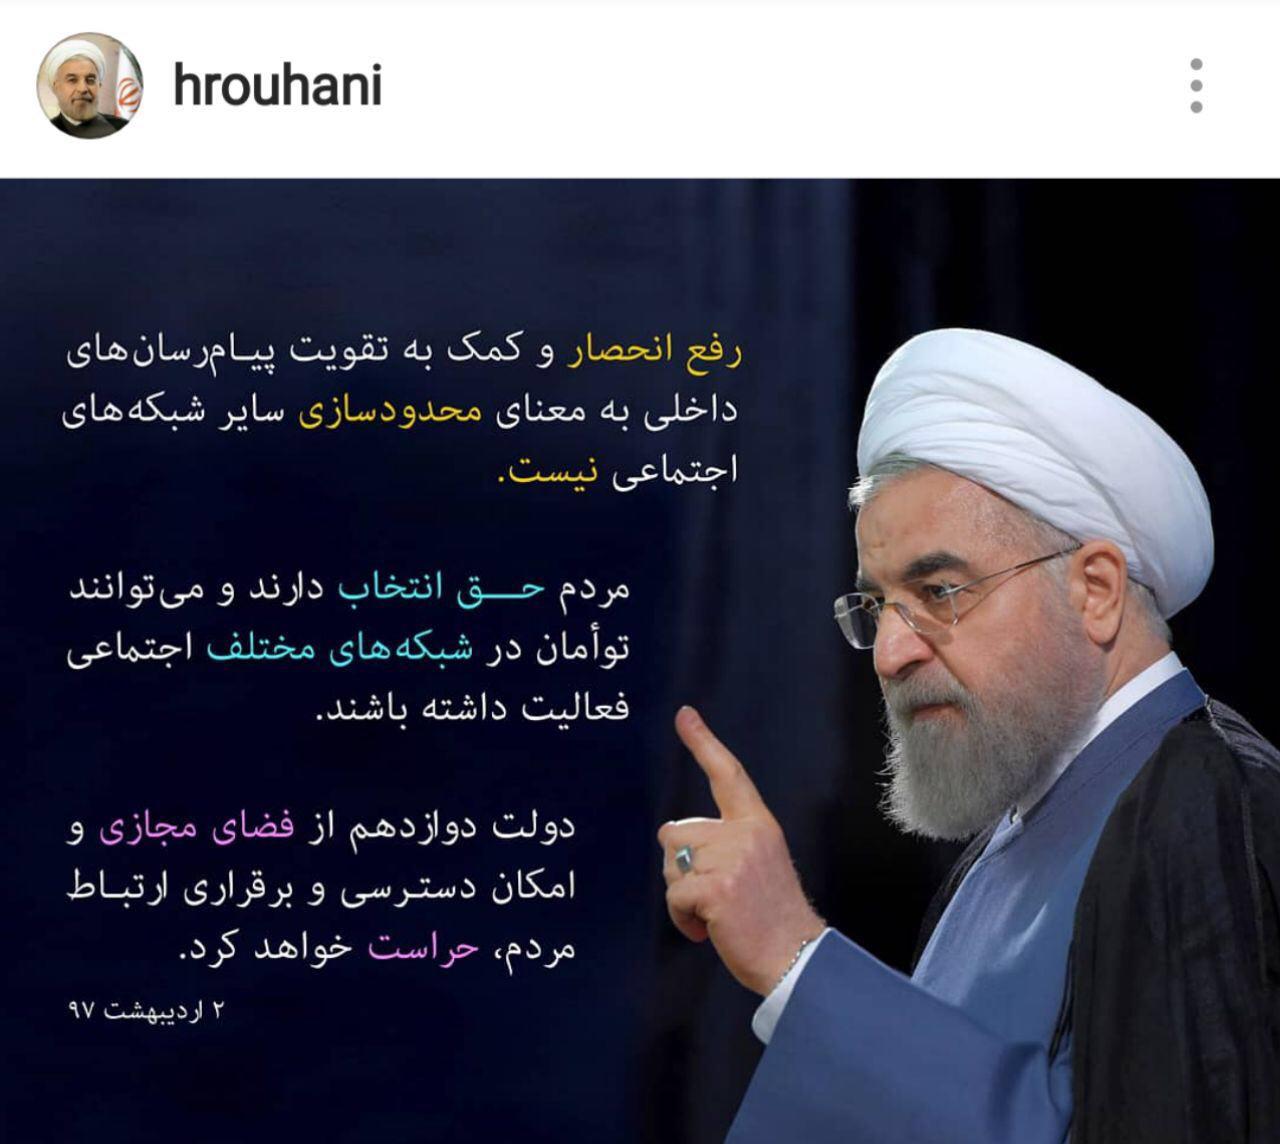 فرار به جلو روحانی با موضع متناقض درباره فیلتر تلگرام/ رئیس جمهور راس سیاست گذاری فضای مجازی است